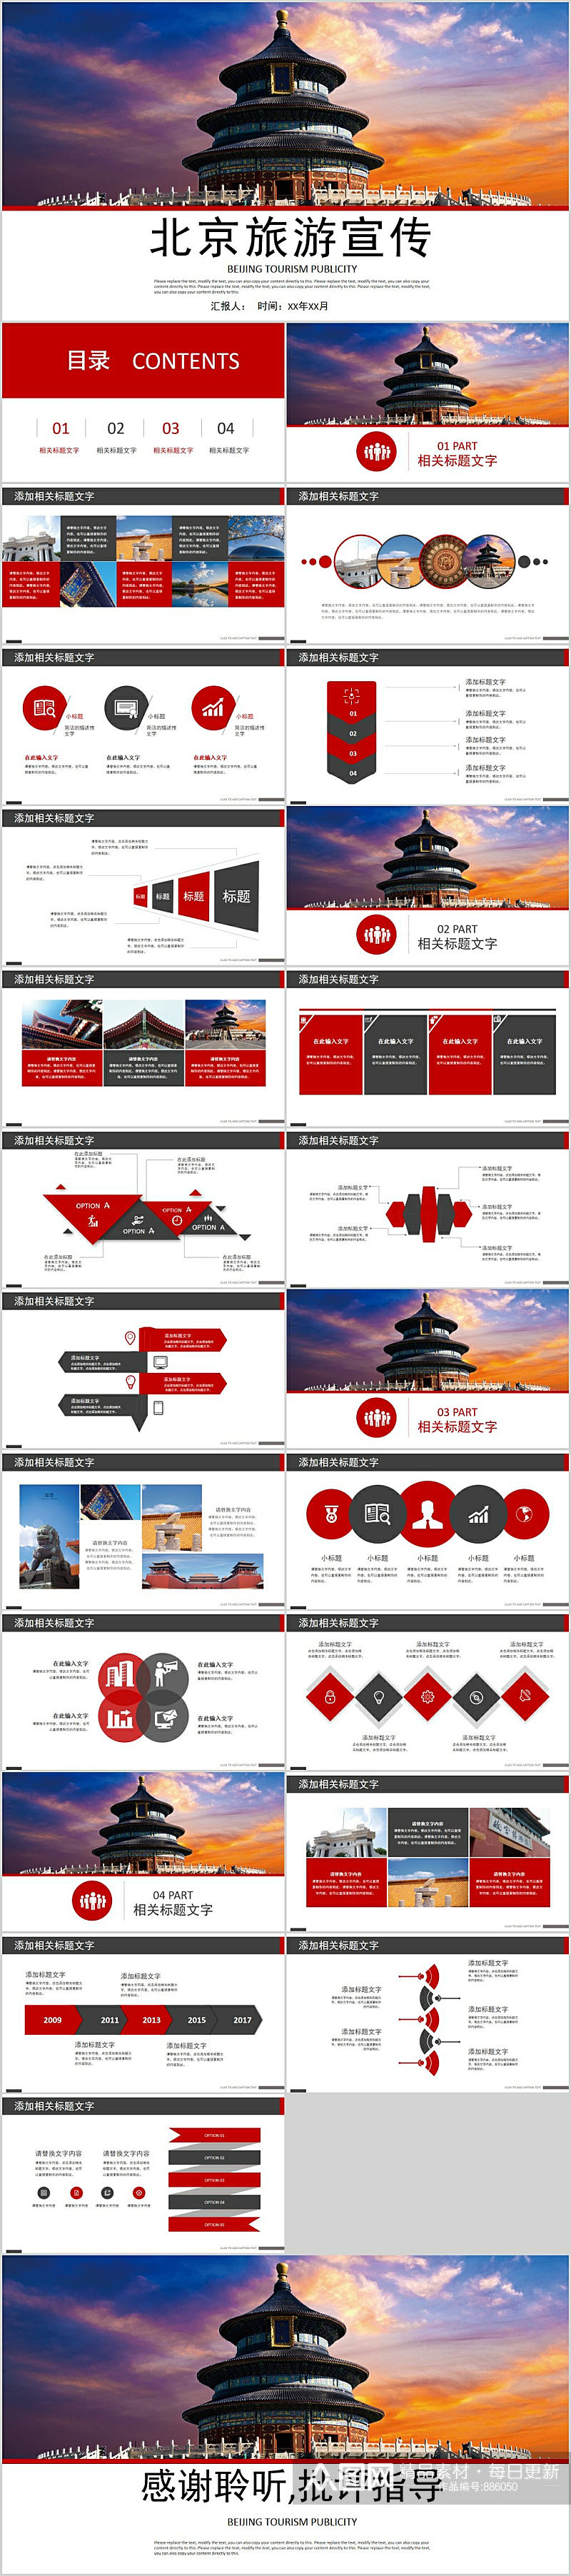 北京旅游宣传时尚PPT模板素材